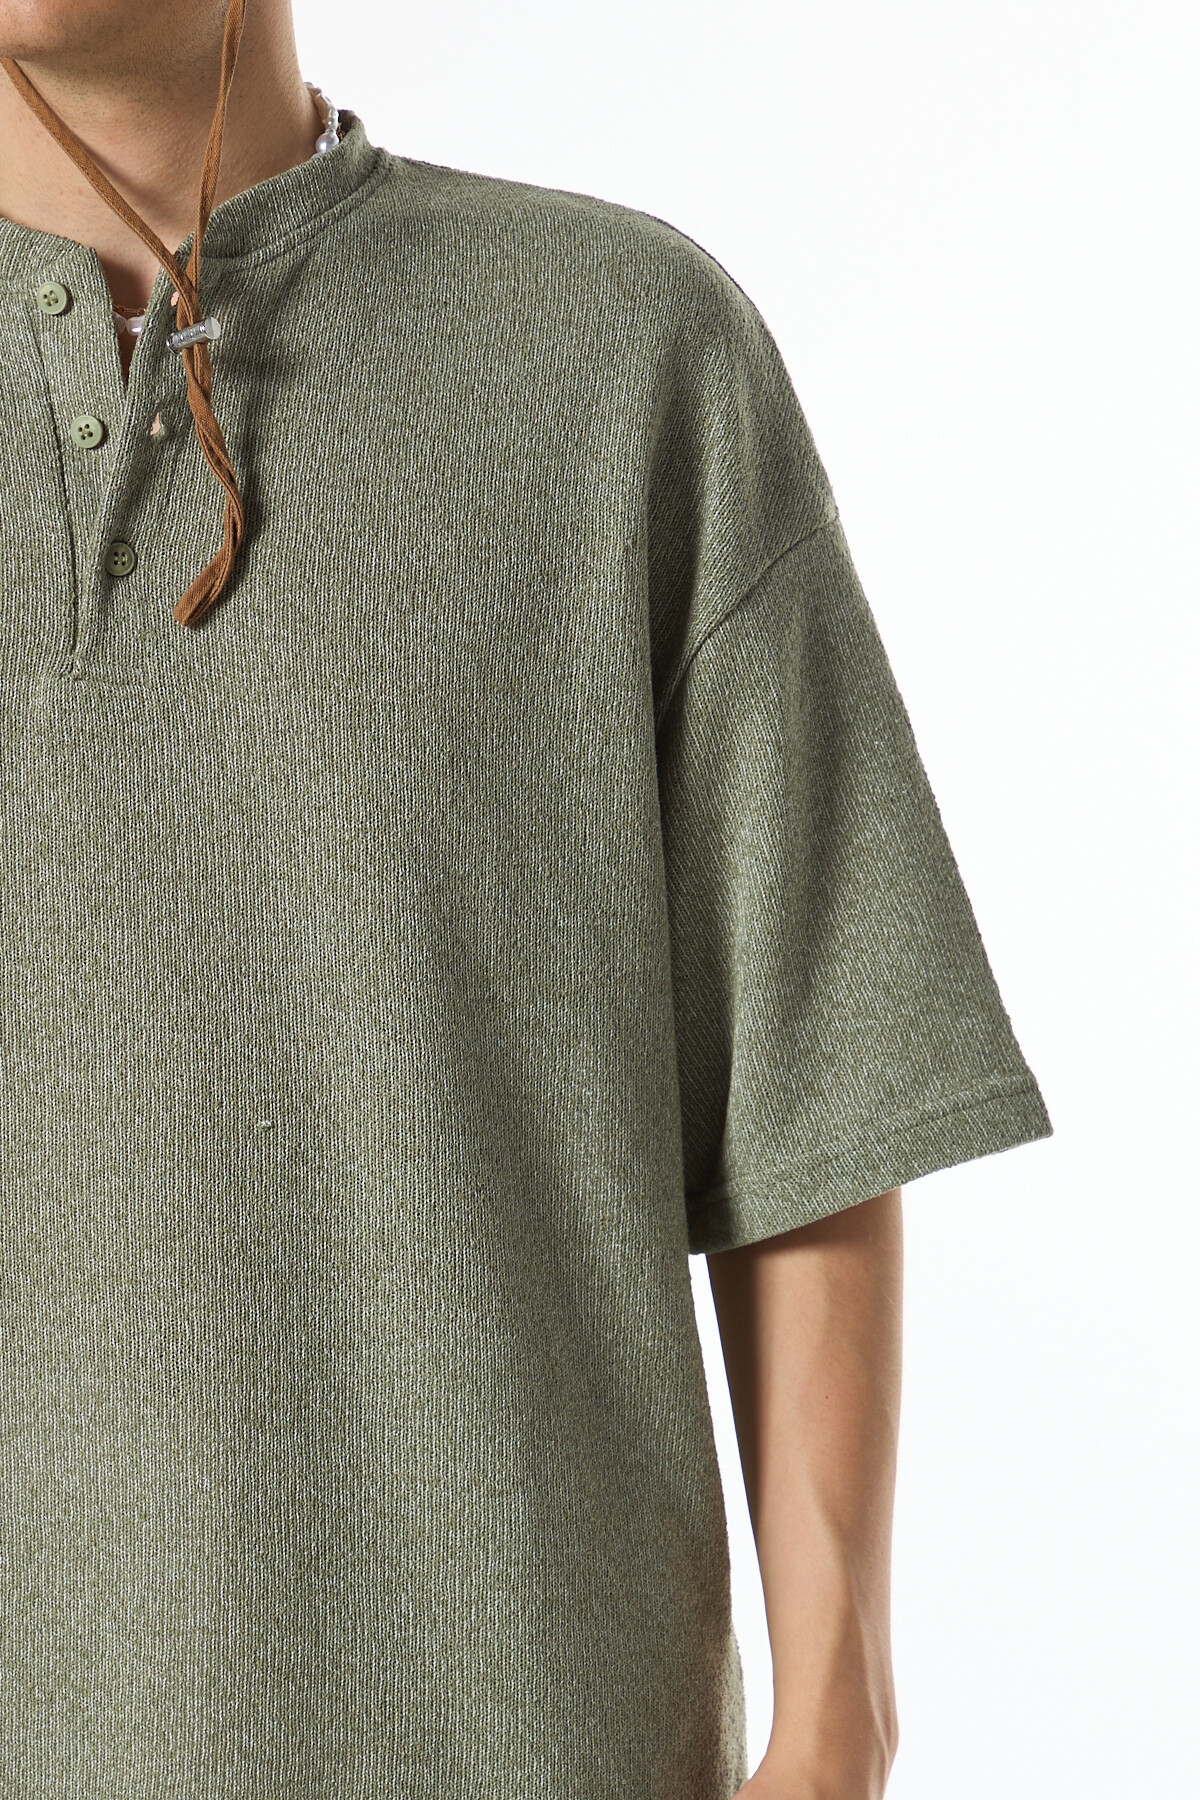 Ön Düğme Detaylı Oversız Triko T-Shirt Haki